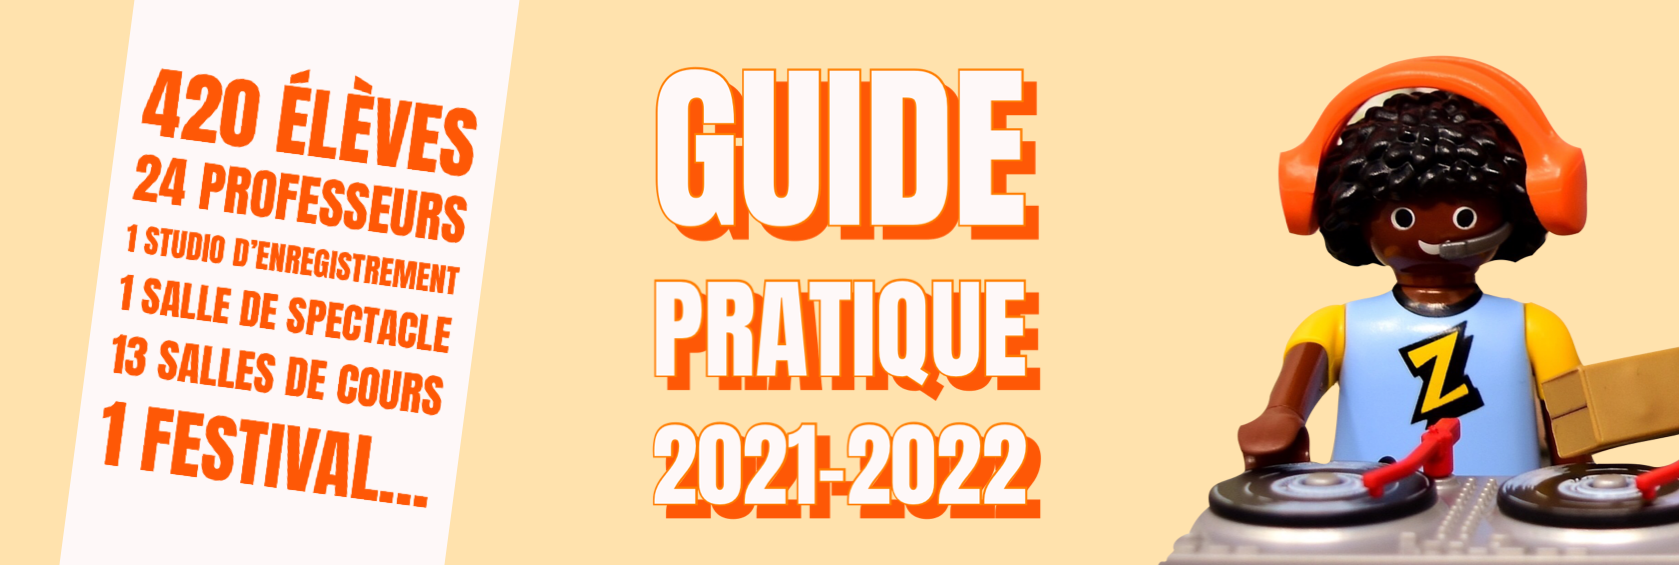 Guide pratique 2021-2022 de l'école de musique d'Ecully